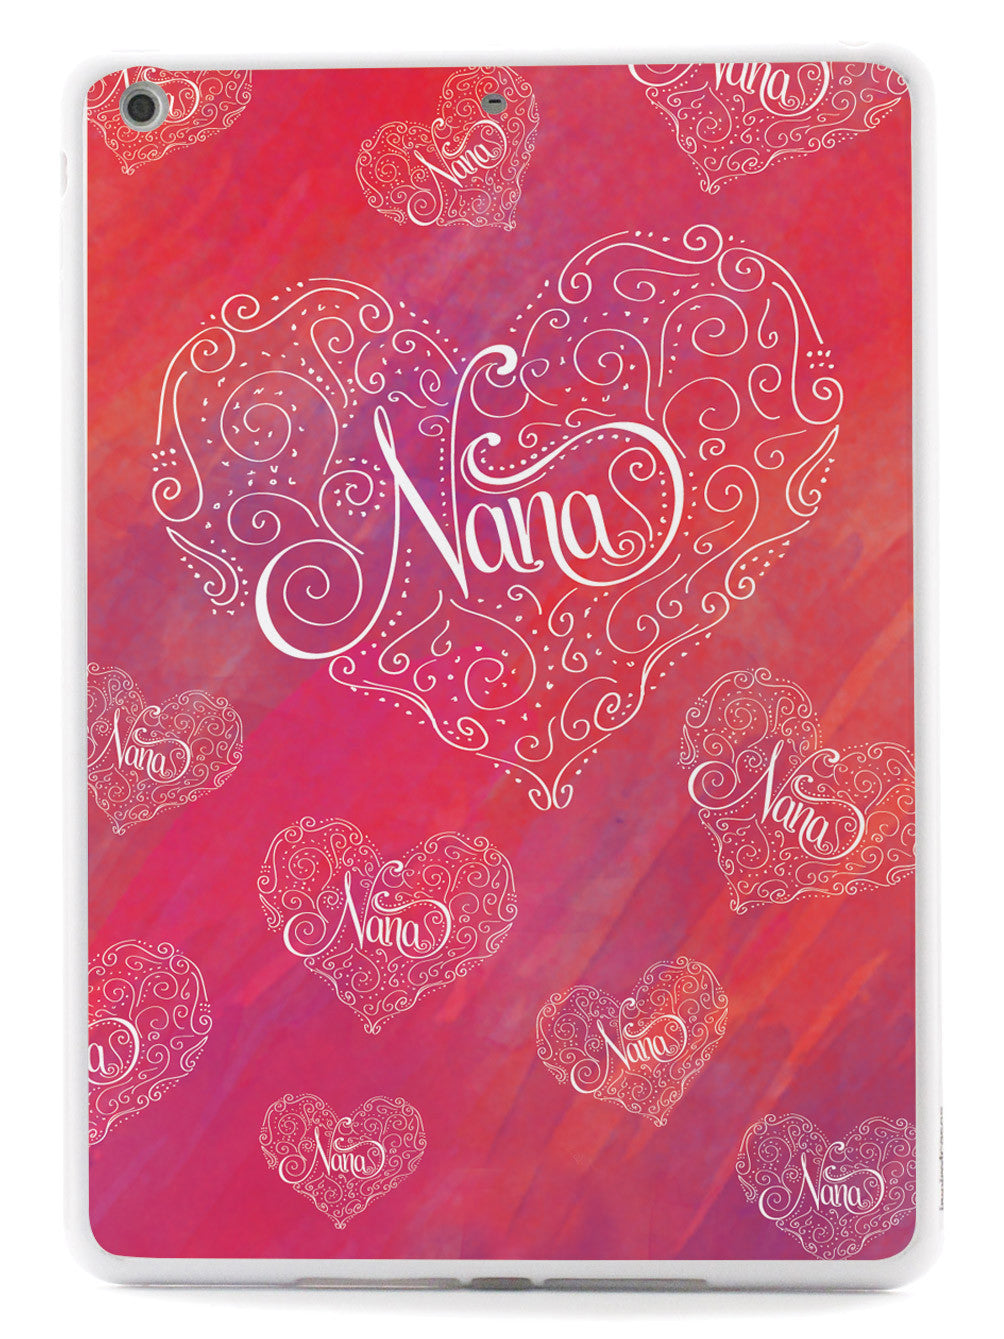 Nana Doodle Heart Design Case